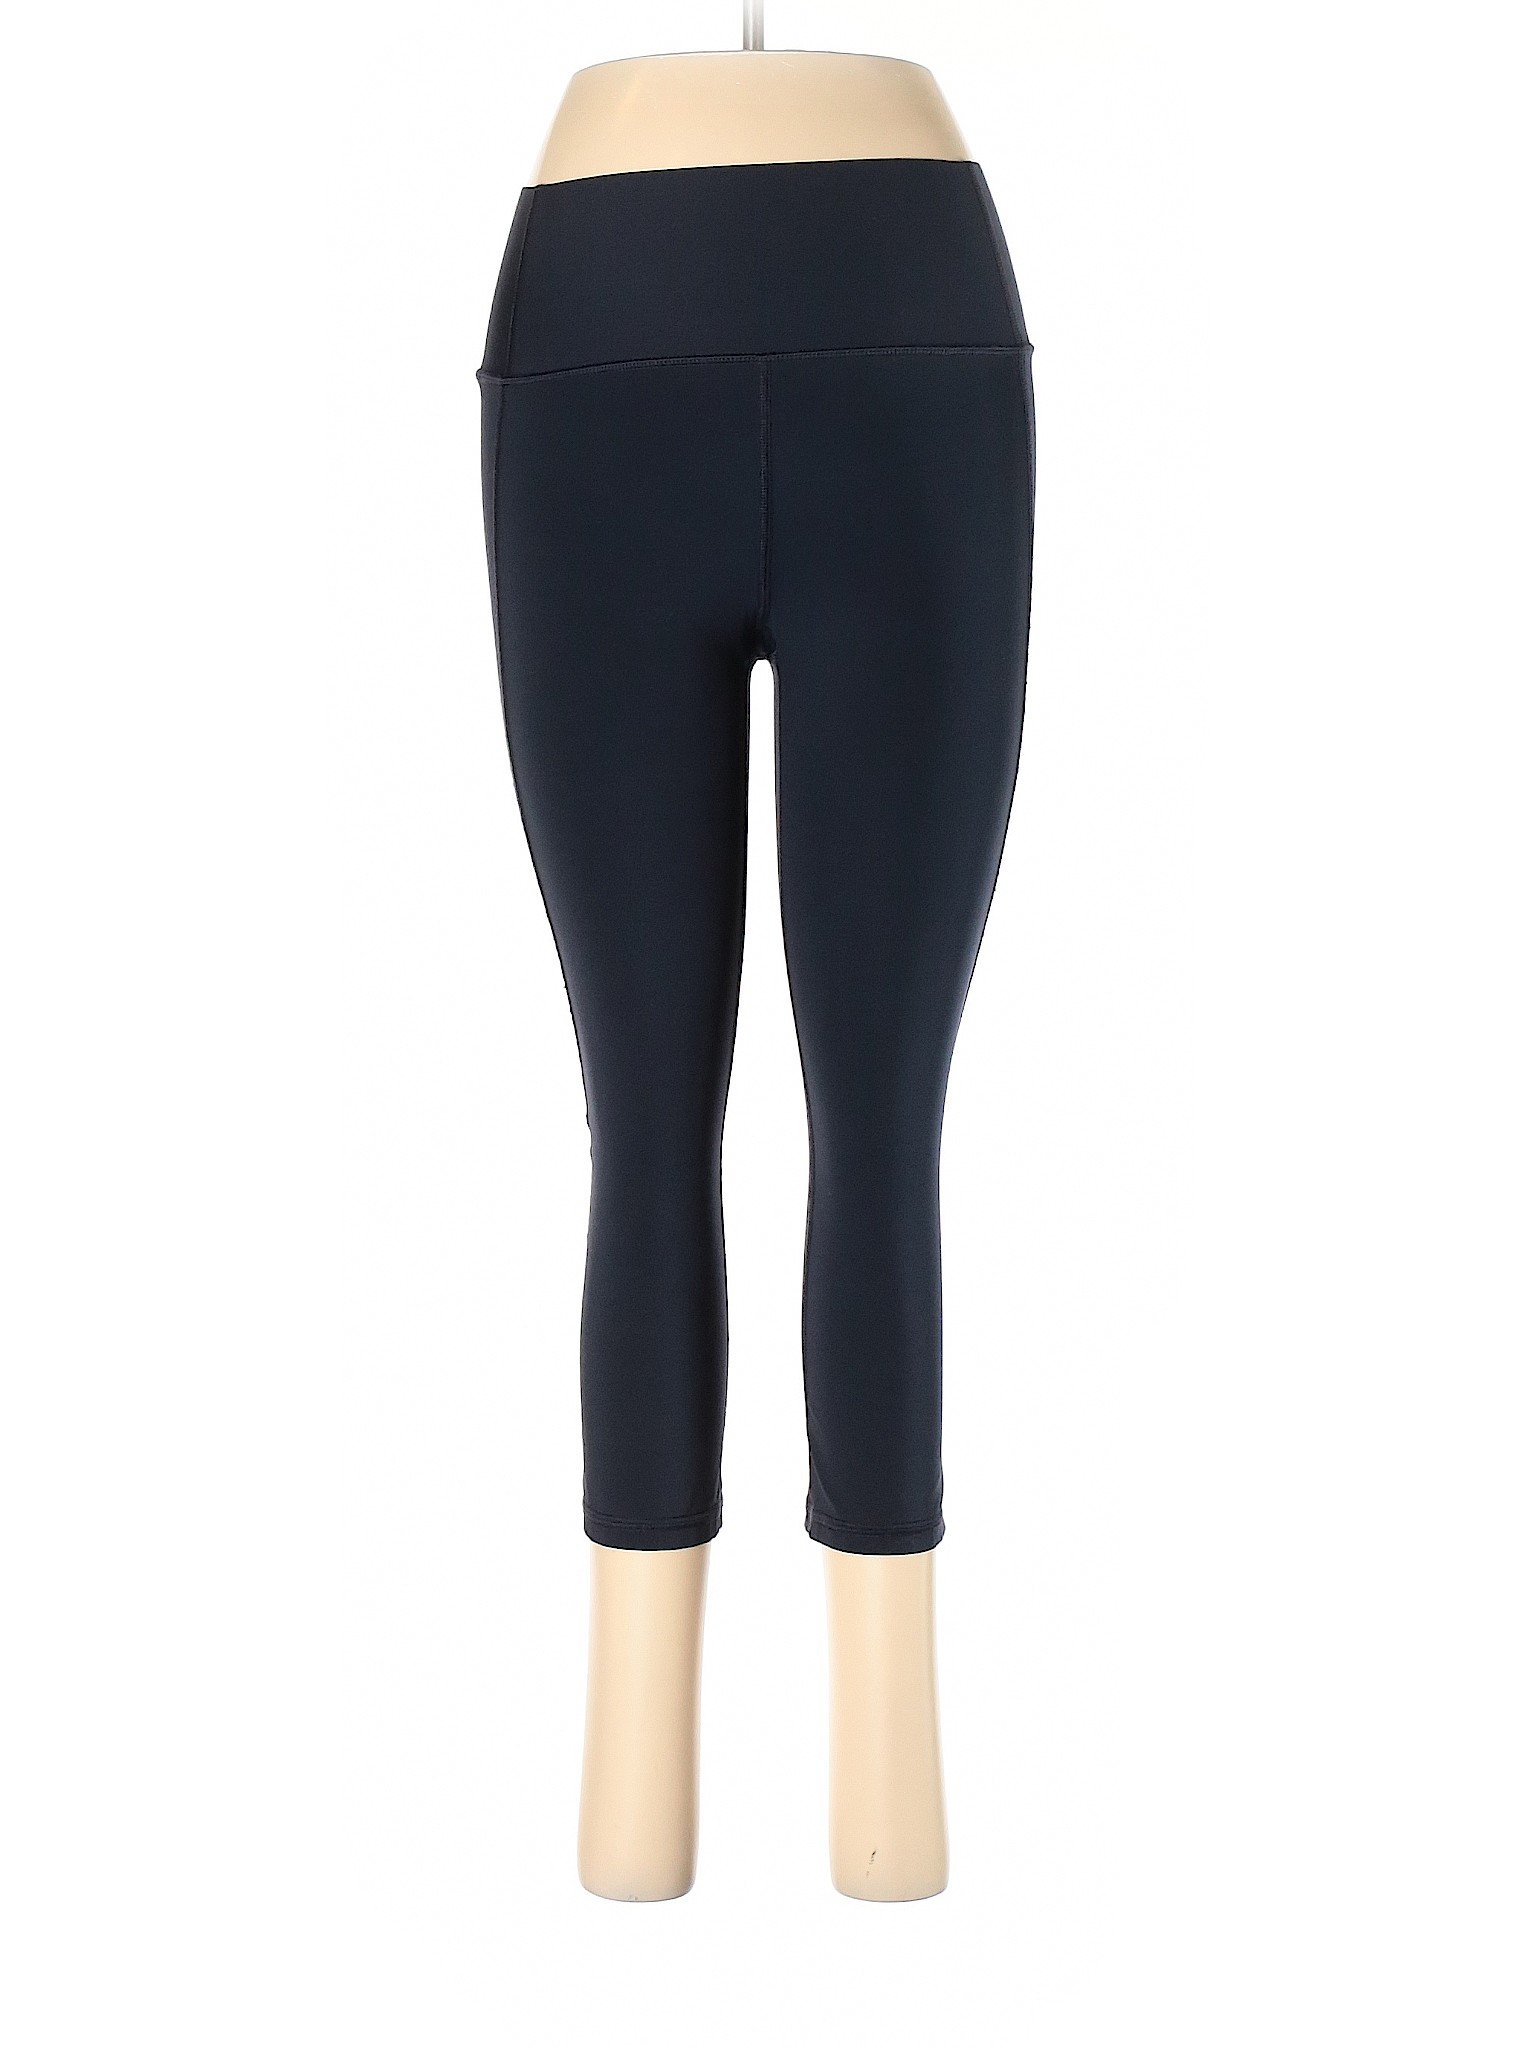 Gap Fit Women Blue Active Pants M | eBay